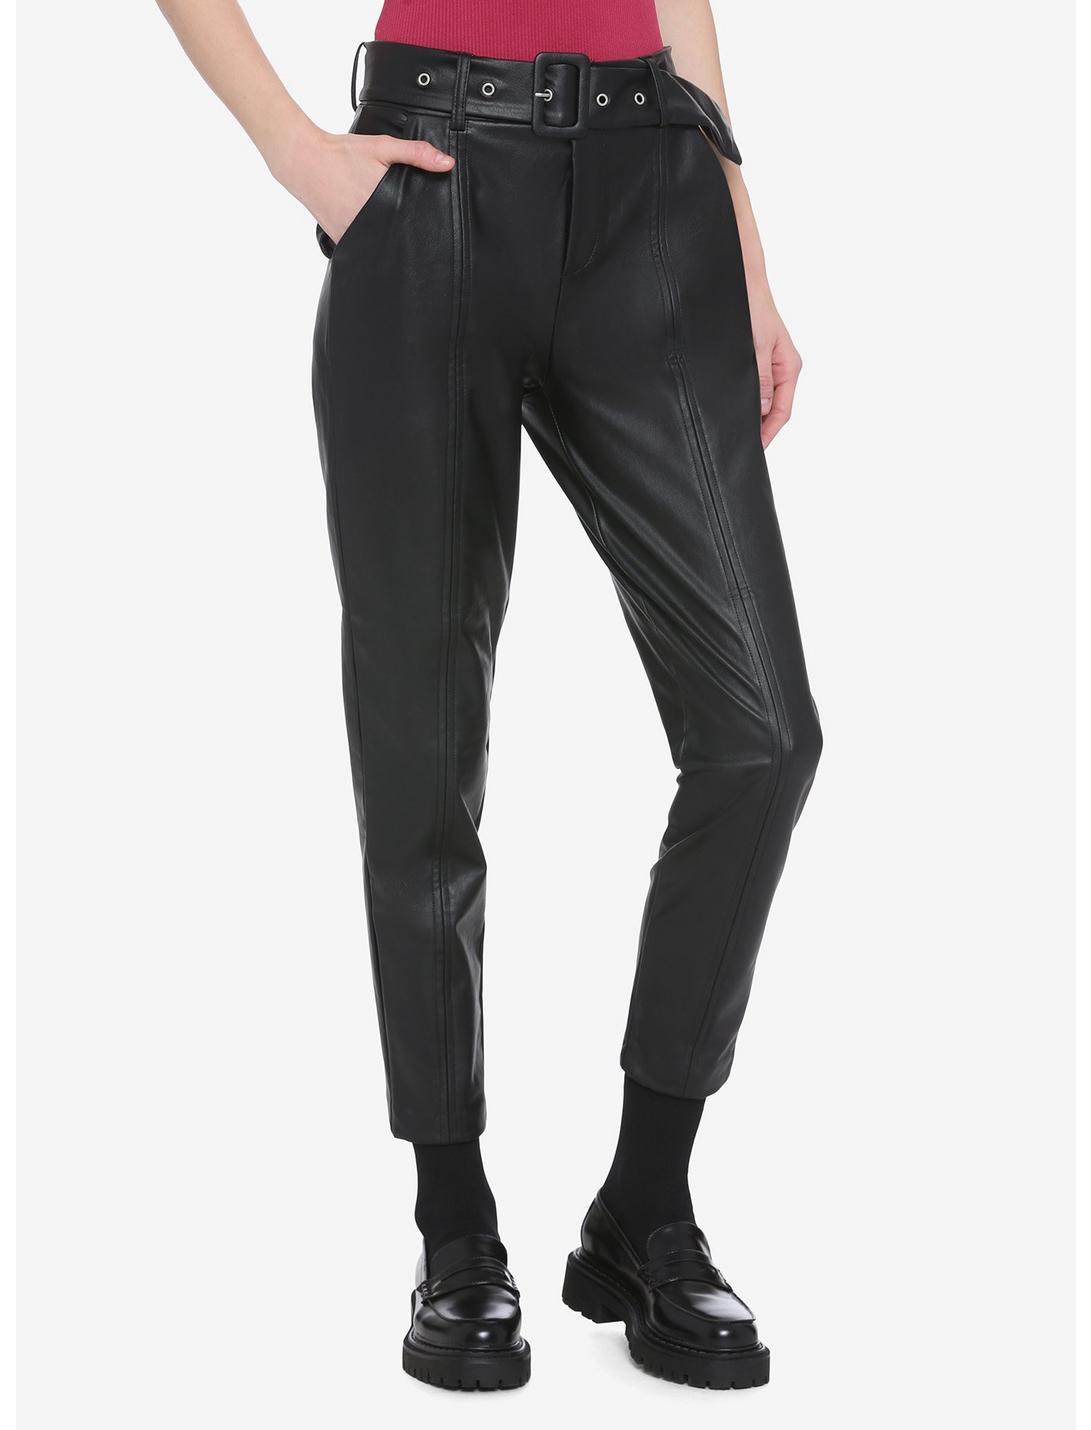 Black Faux Leather Pants, BLACK, hi-res